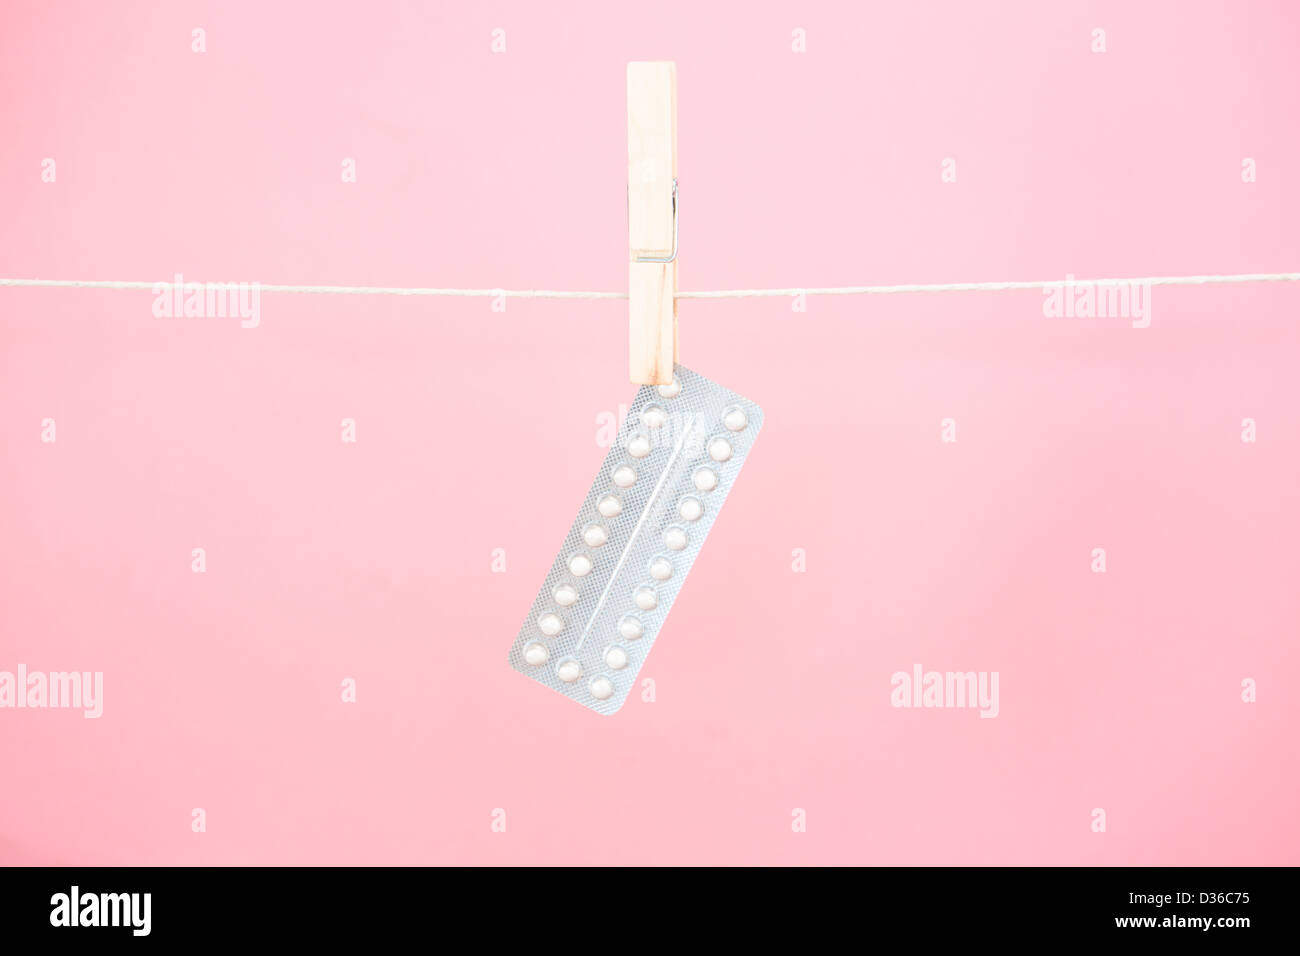 Pilule contraceptive blister pendaison de la ligne Banque D'Images